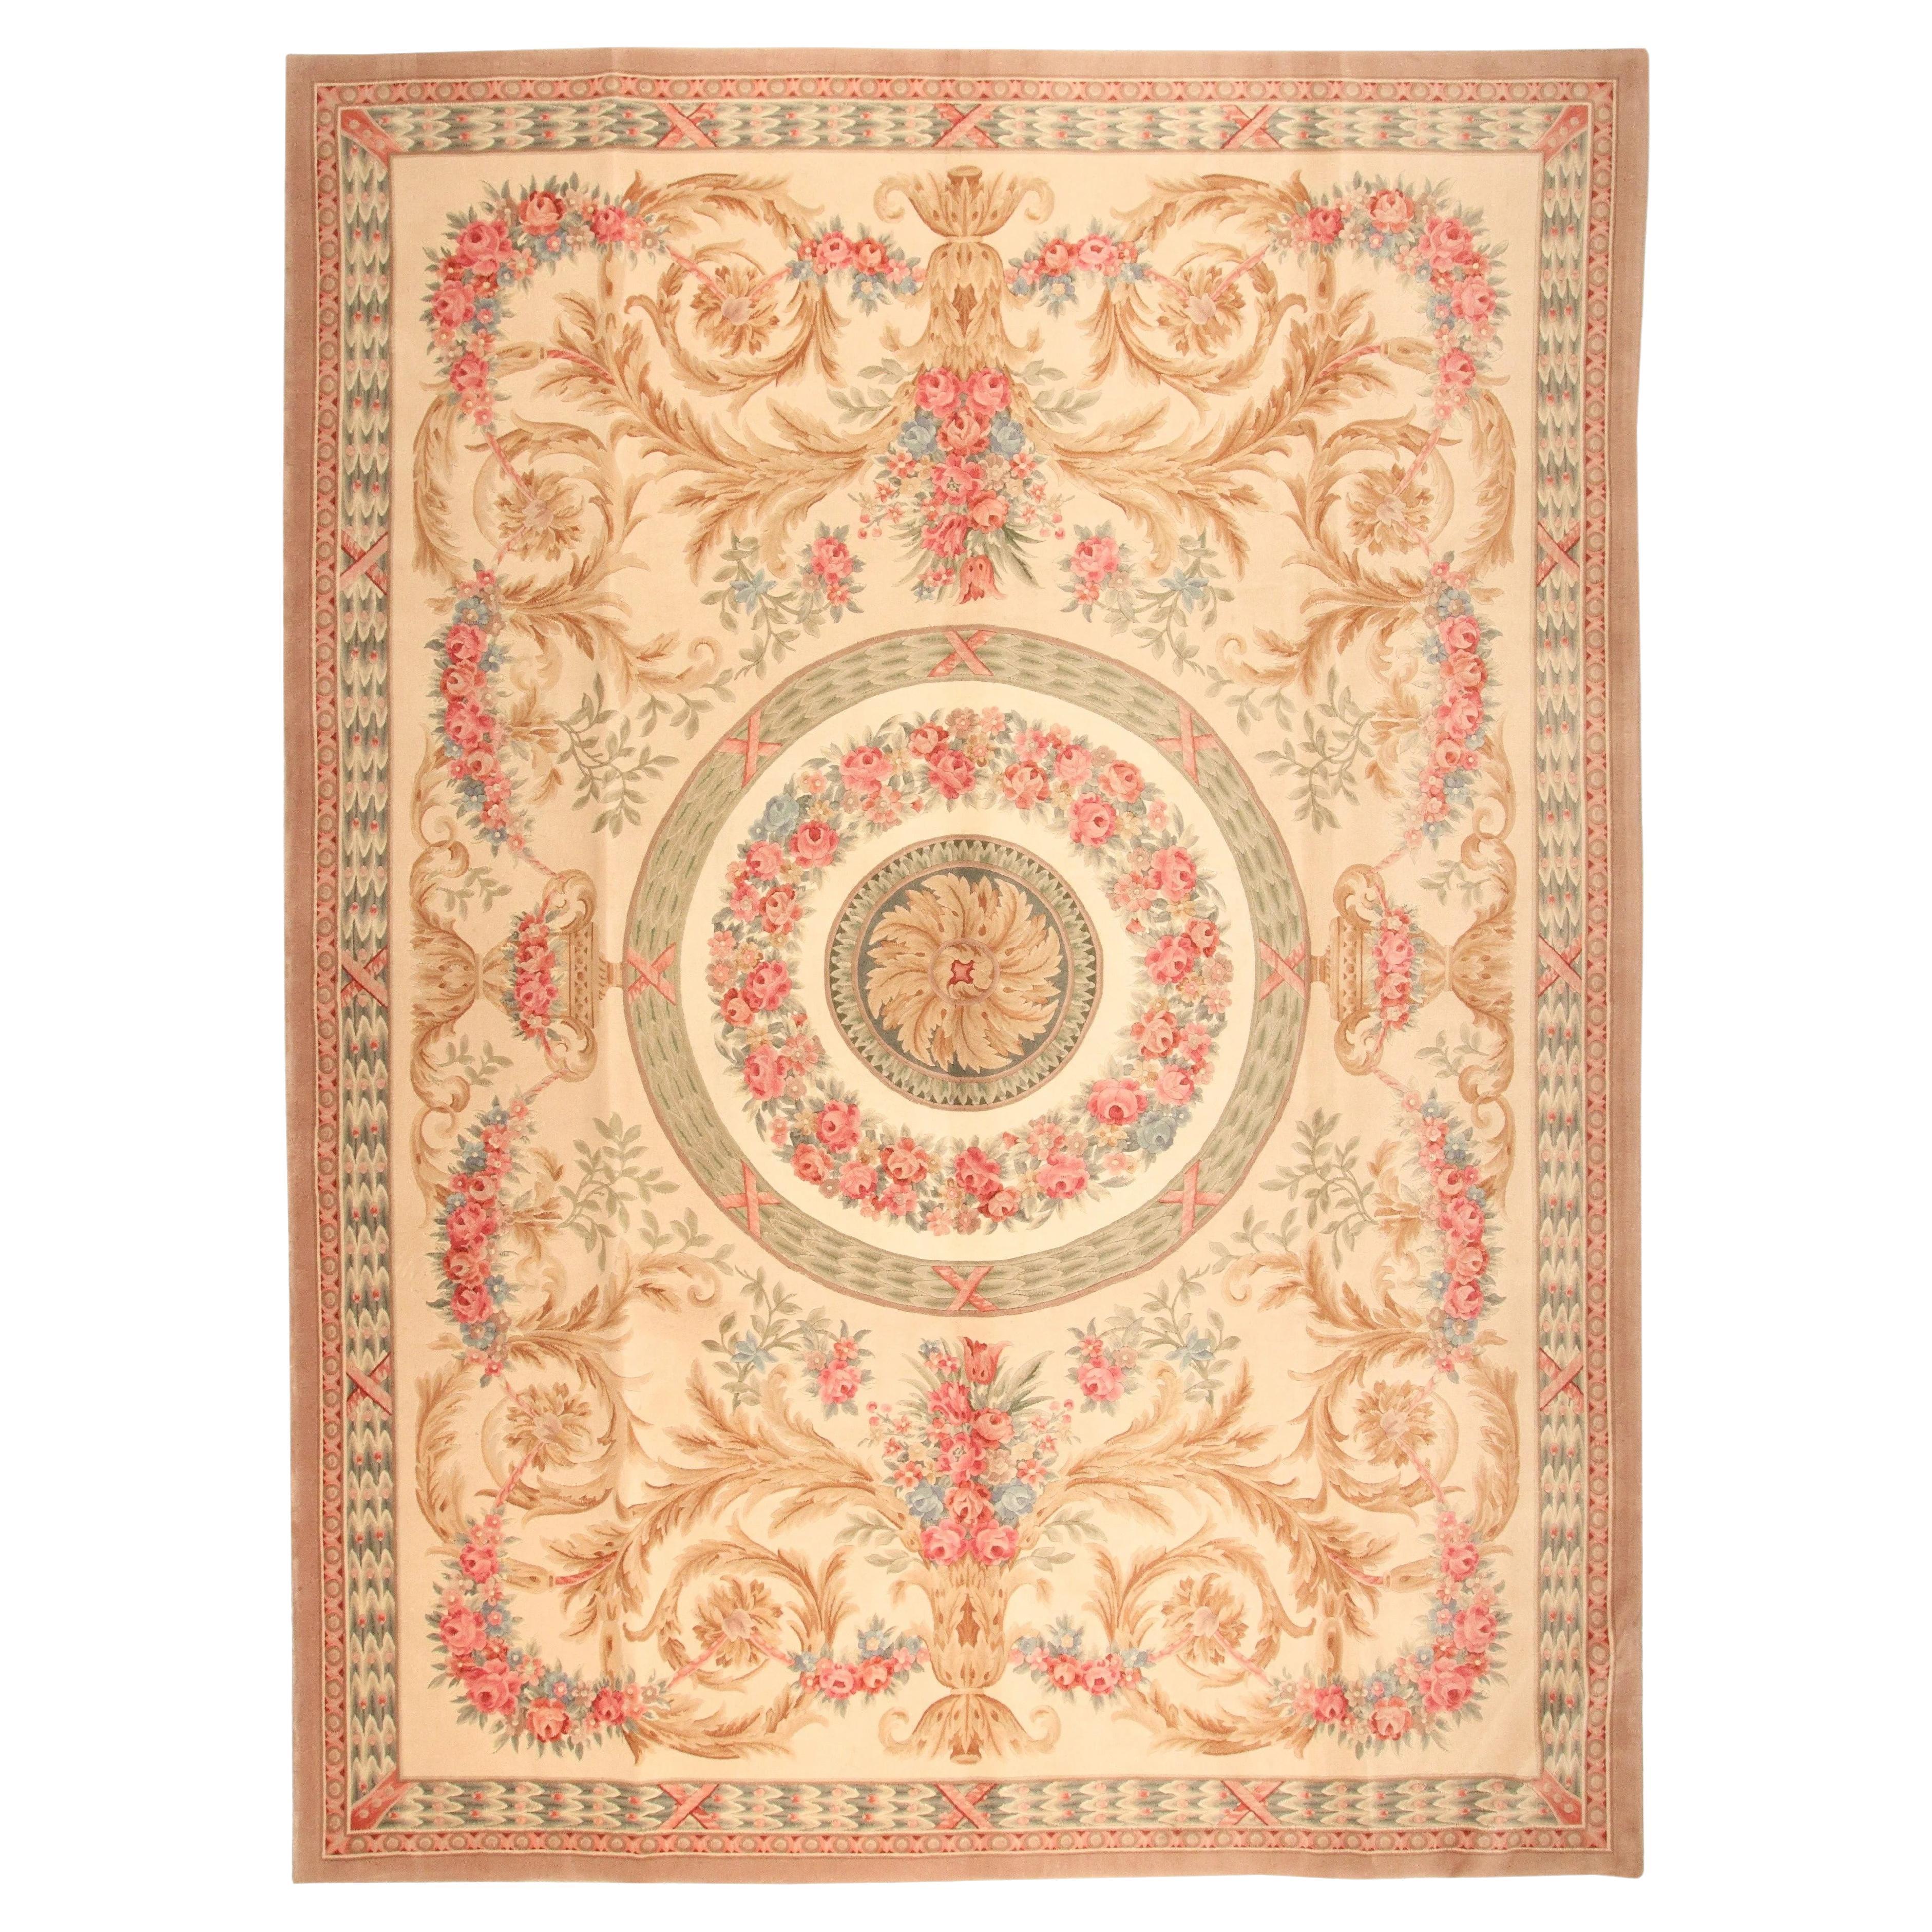 VIA COMO 'Venetian Soft' 10x13 Teppich Handgeknüpfter Teppich Einzigartiger Teppich aus Wolle und Seide